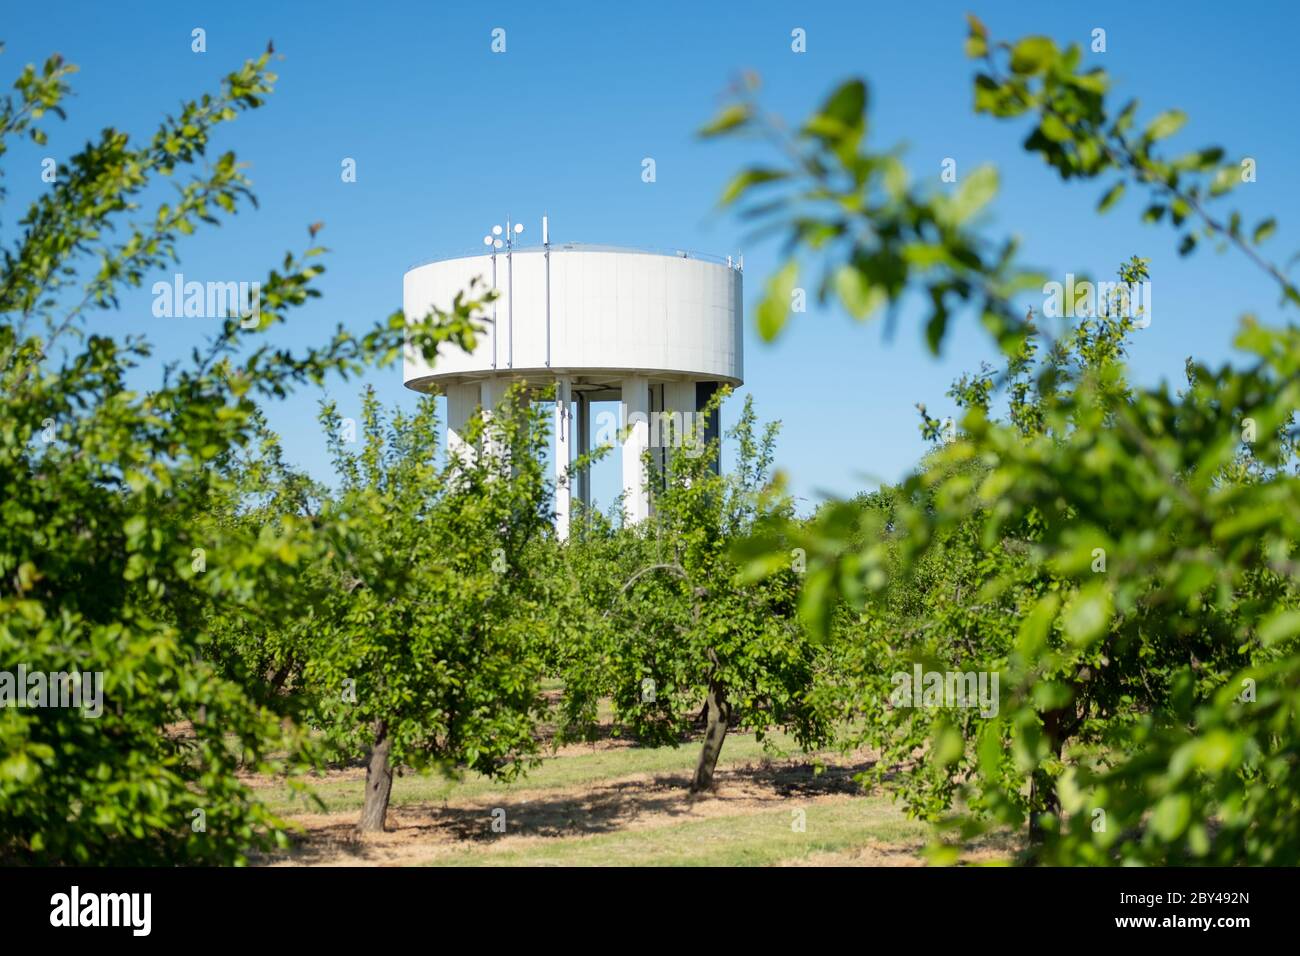 Lontano bianco dipinto torre d'acqua visto attraverso alberi di meleti frutteto denso in una posizione rurale. Le antenne 5G appena montate sono visibili sulla parte superiore. Foto Stock